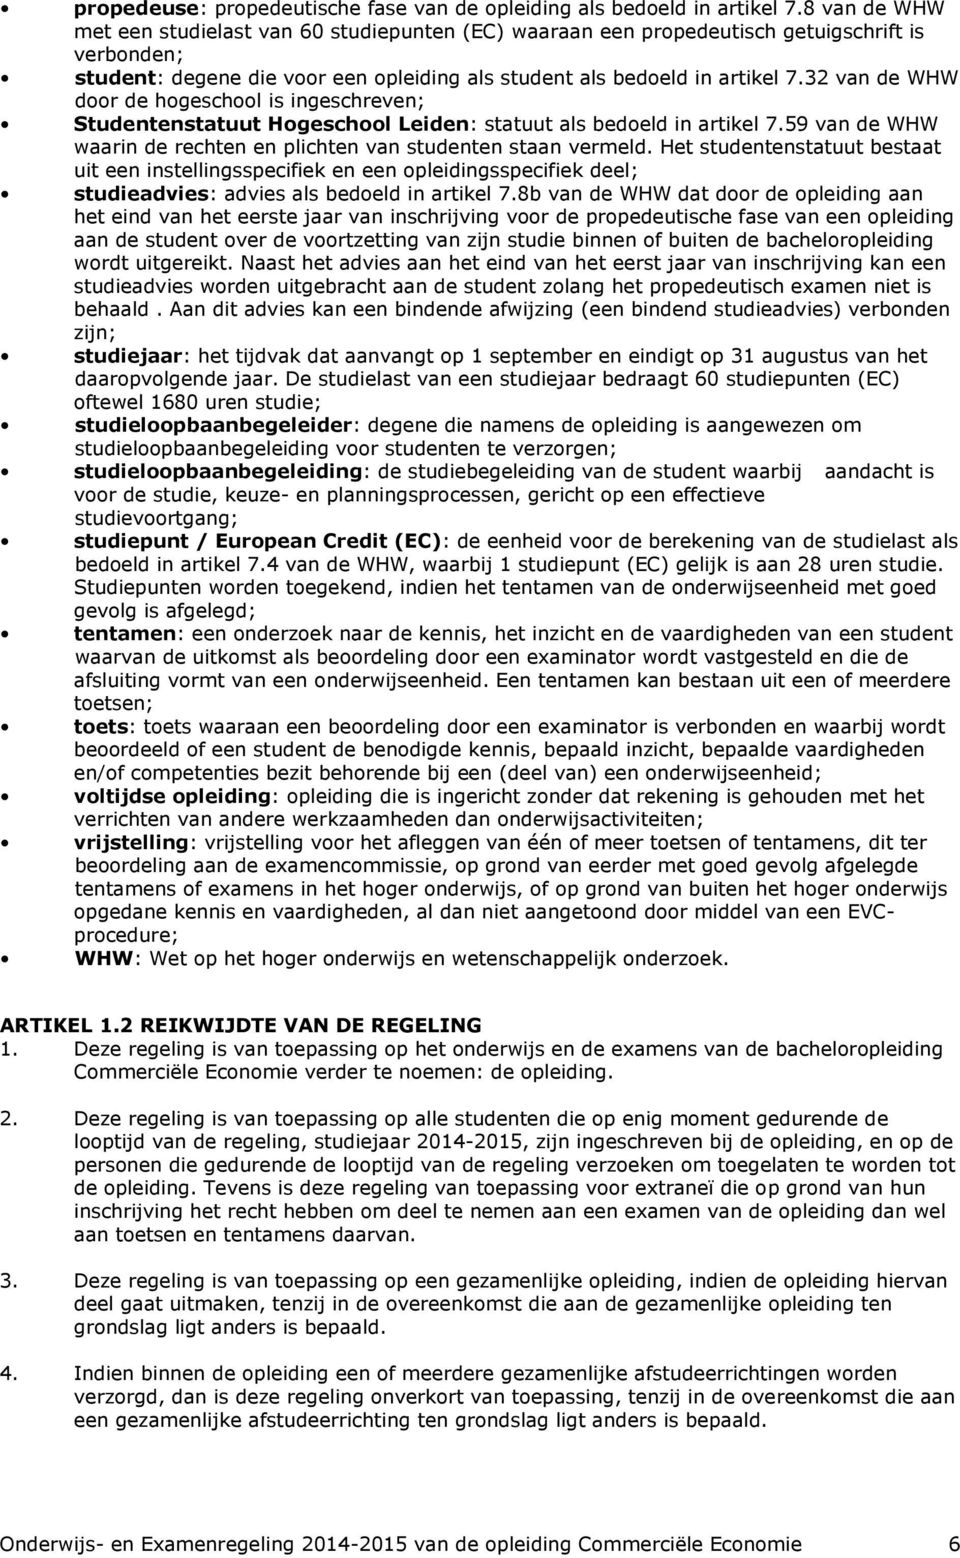 32 van de WHW door de hogeschool is ingeschreven; Studentenstatuut Hogeschool Leiden: statuut als bedoeld in artikel 7.59 van de WHW waarin de rechten en plichten van studenten staan vermeld.